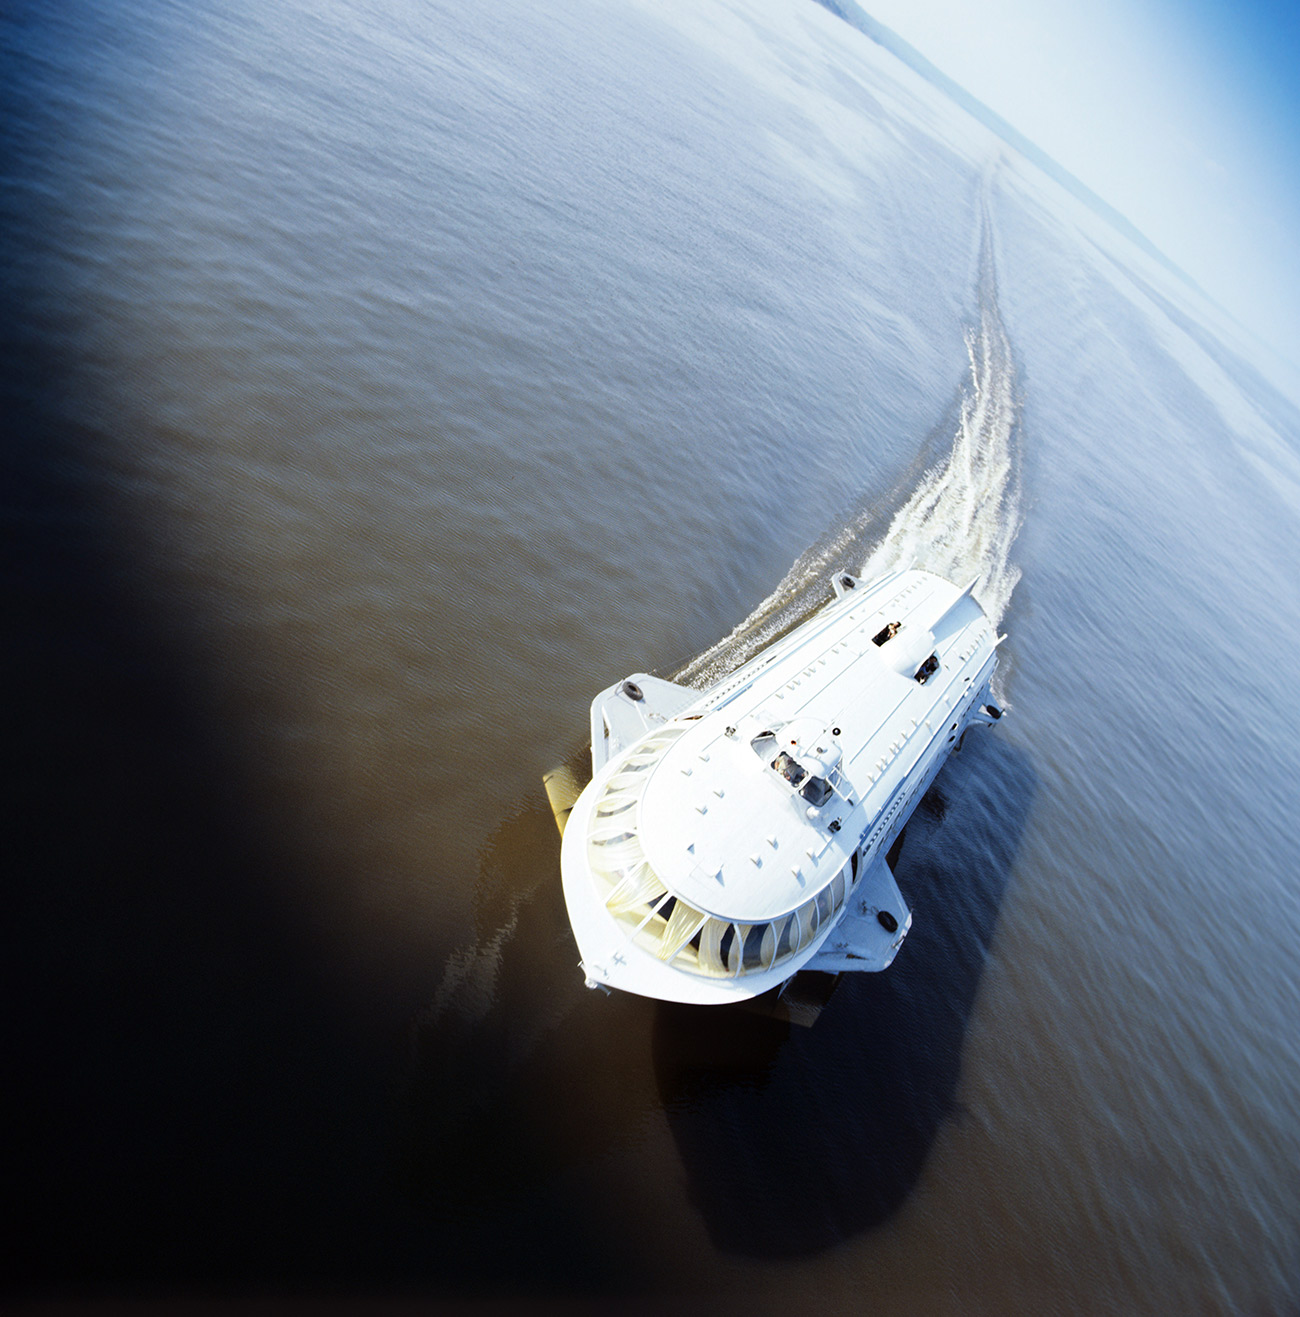 Kometa predstavlja putnički hidrogliser, koji je u SSSR-u konstruiran ranih 60-tih godina. Riječ je o brodu koji posjeduje podvodna krila ("hidrokrila") koja ga pri gibanju izdižu na površinu vode. Dok stoji, hidrogliser djeluje kao i svaki drugi brod. Međutim, kada se brzina počne povećavati, on se izdiže iznad površine vode. Na kraju je trup broda izdignut iznad vode i hidrogliser djeluje kao brod na skijama.